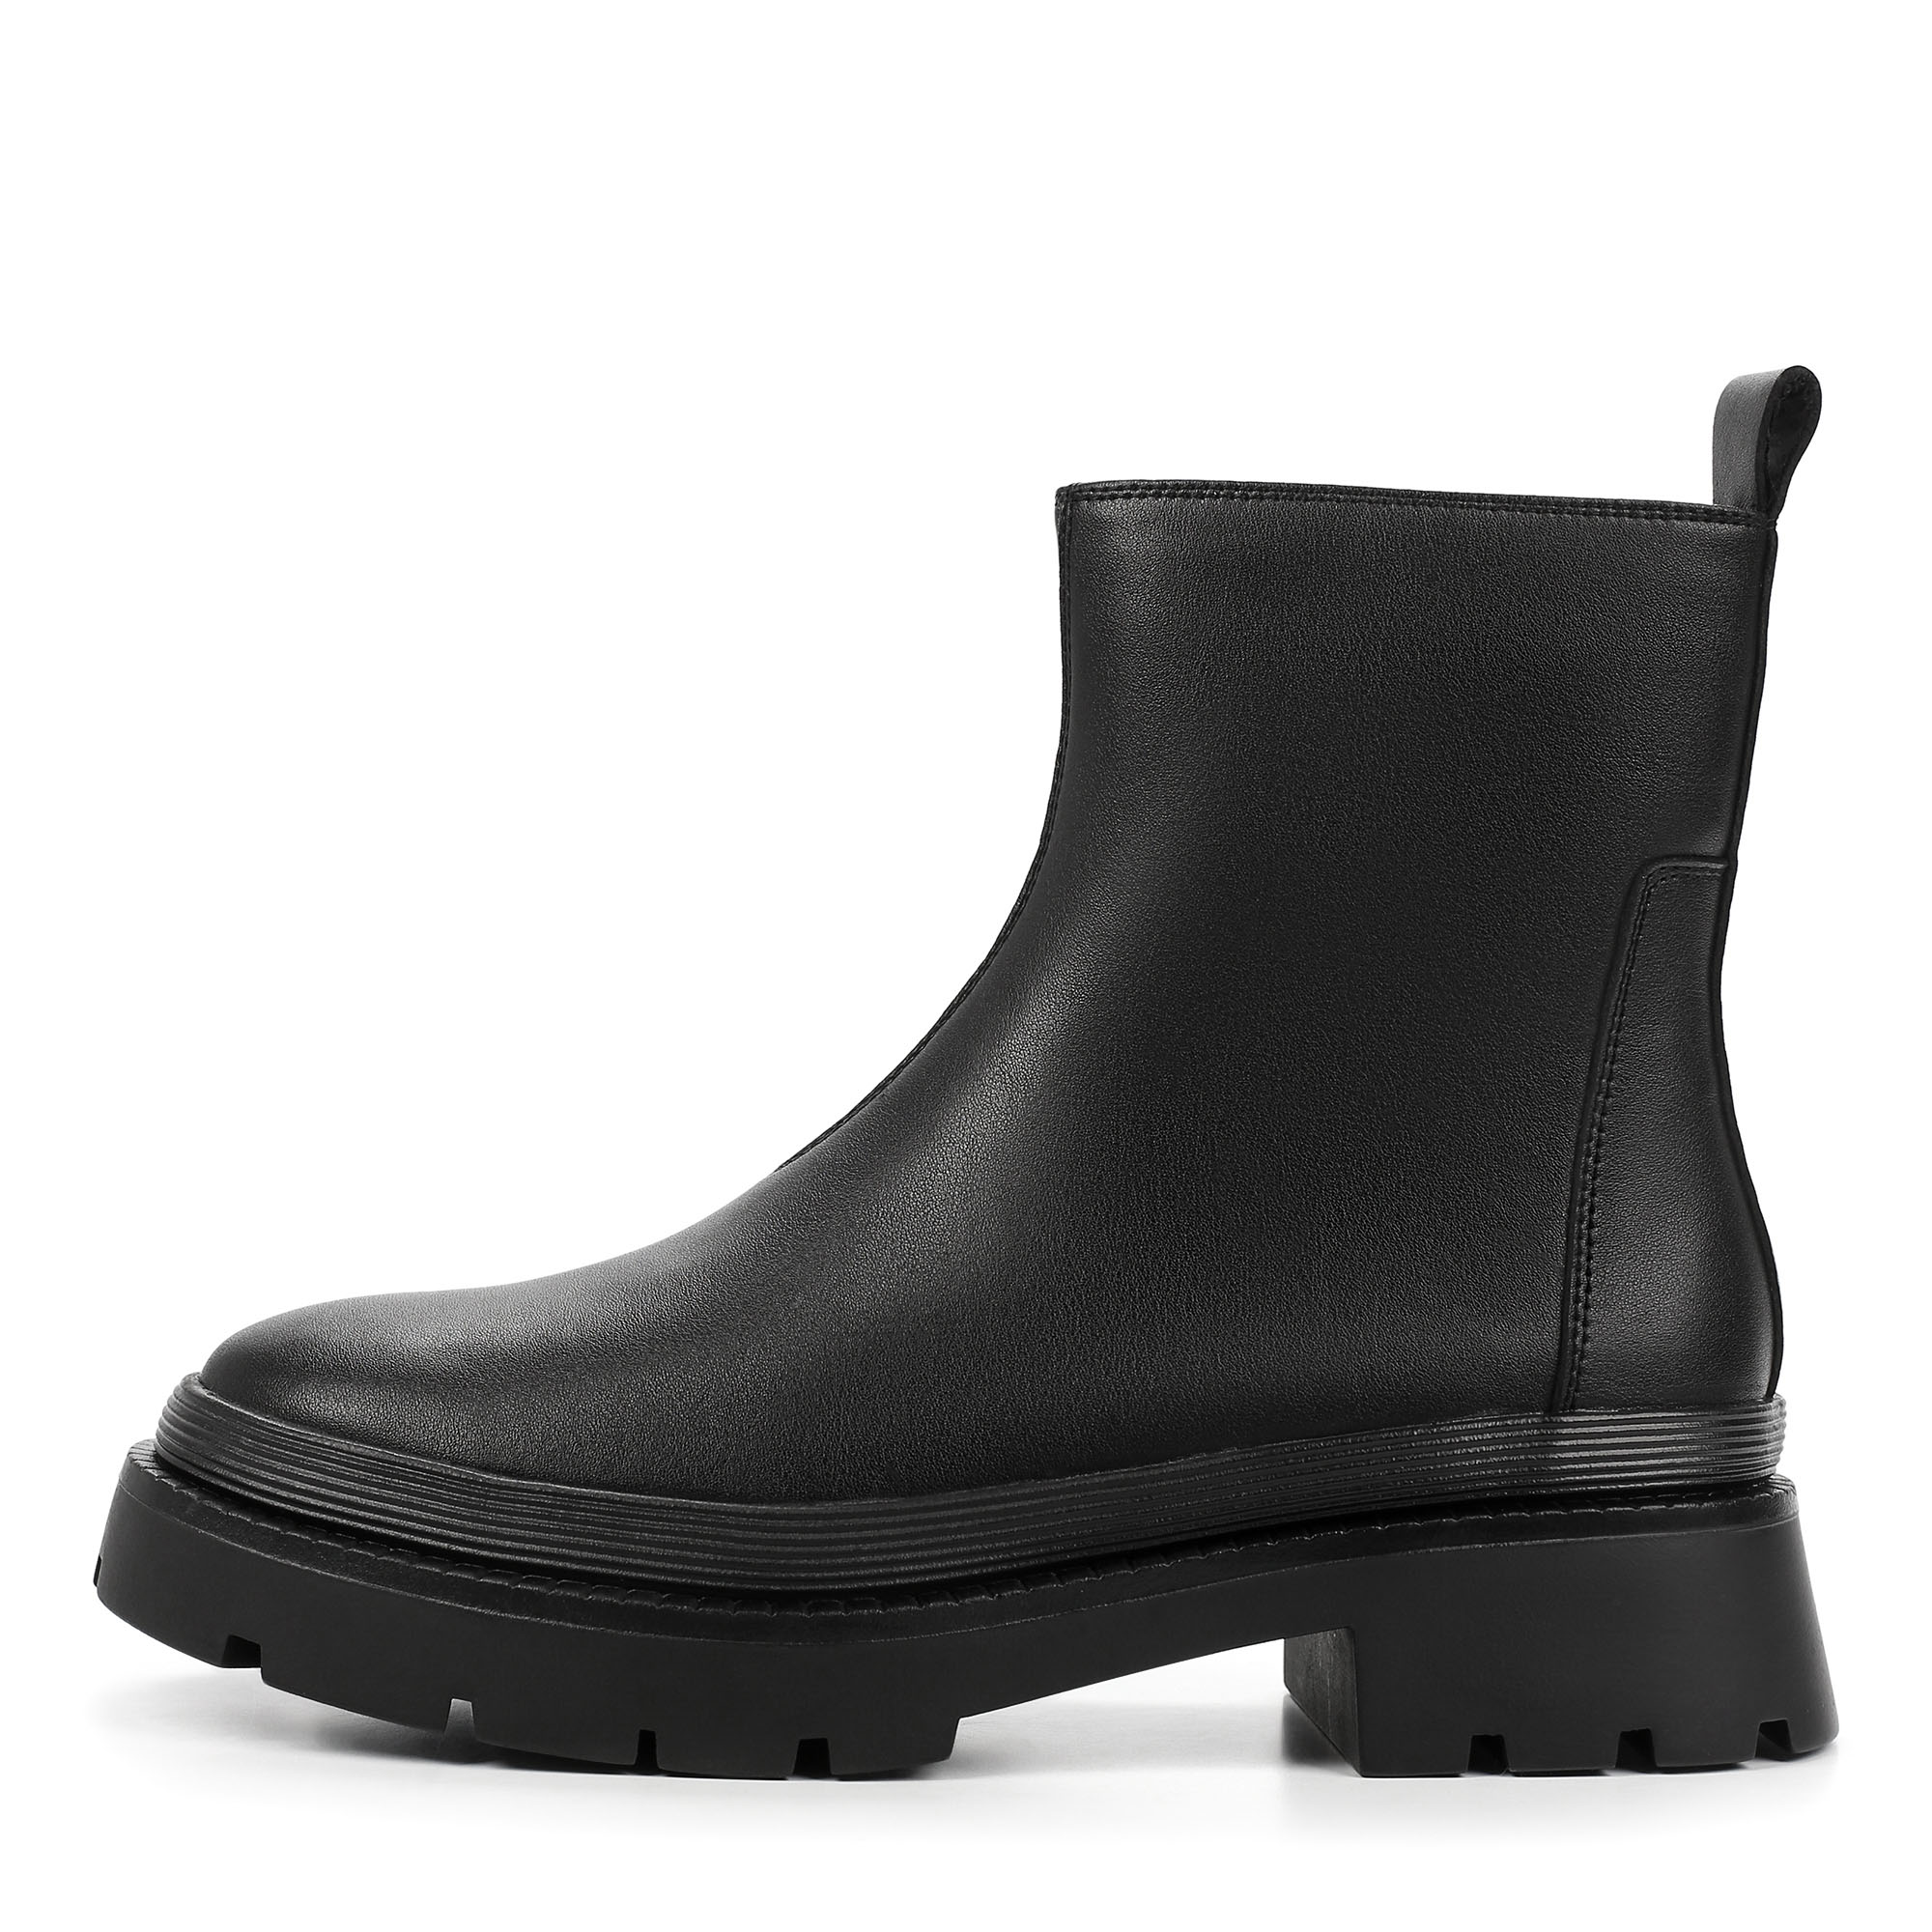 Ботинки Thomas Munz 126-380D-50202, цвет черный, размер 36